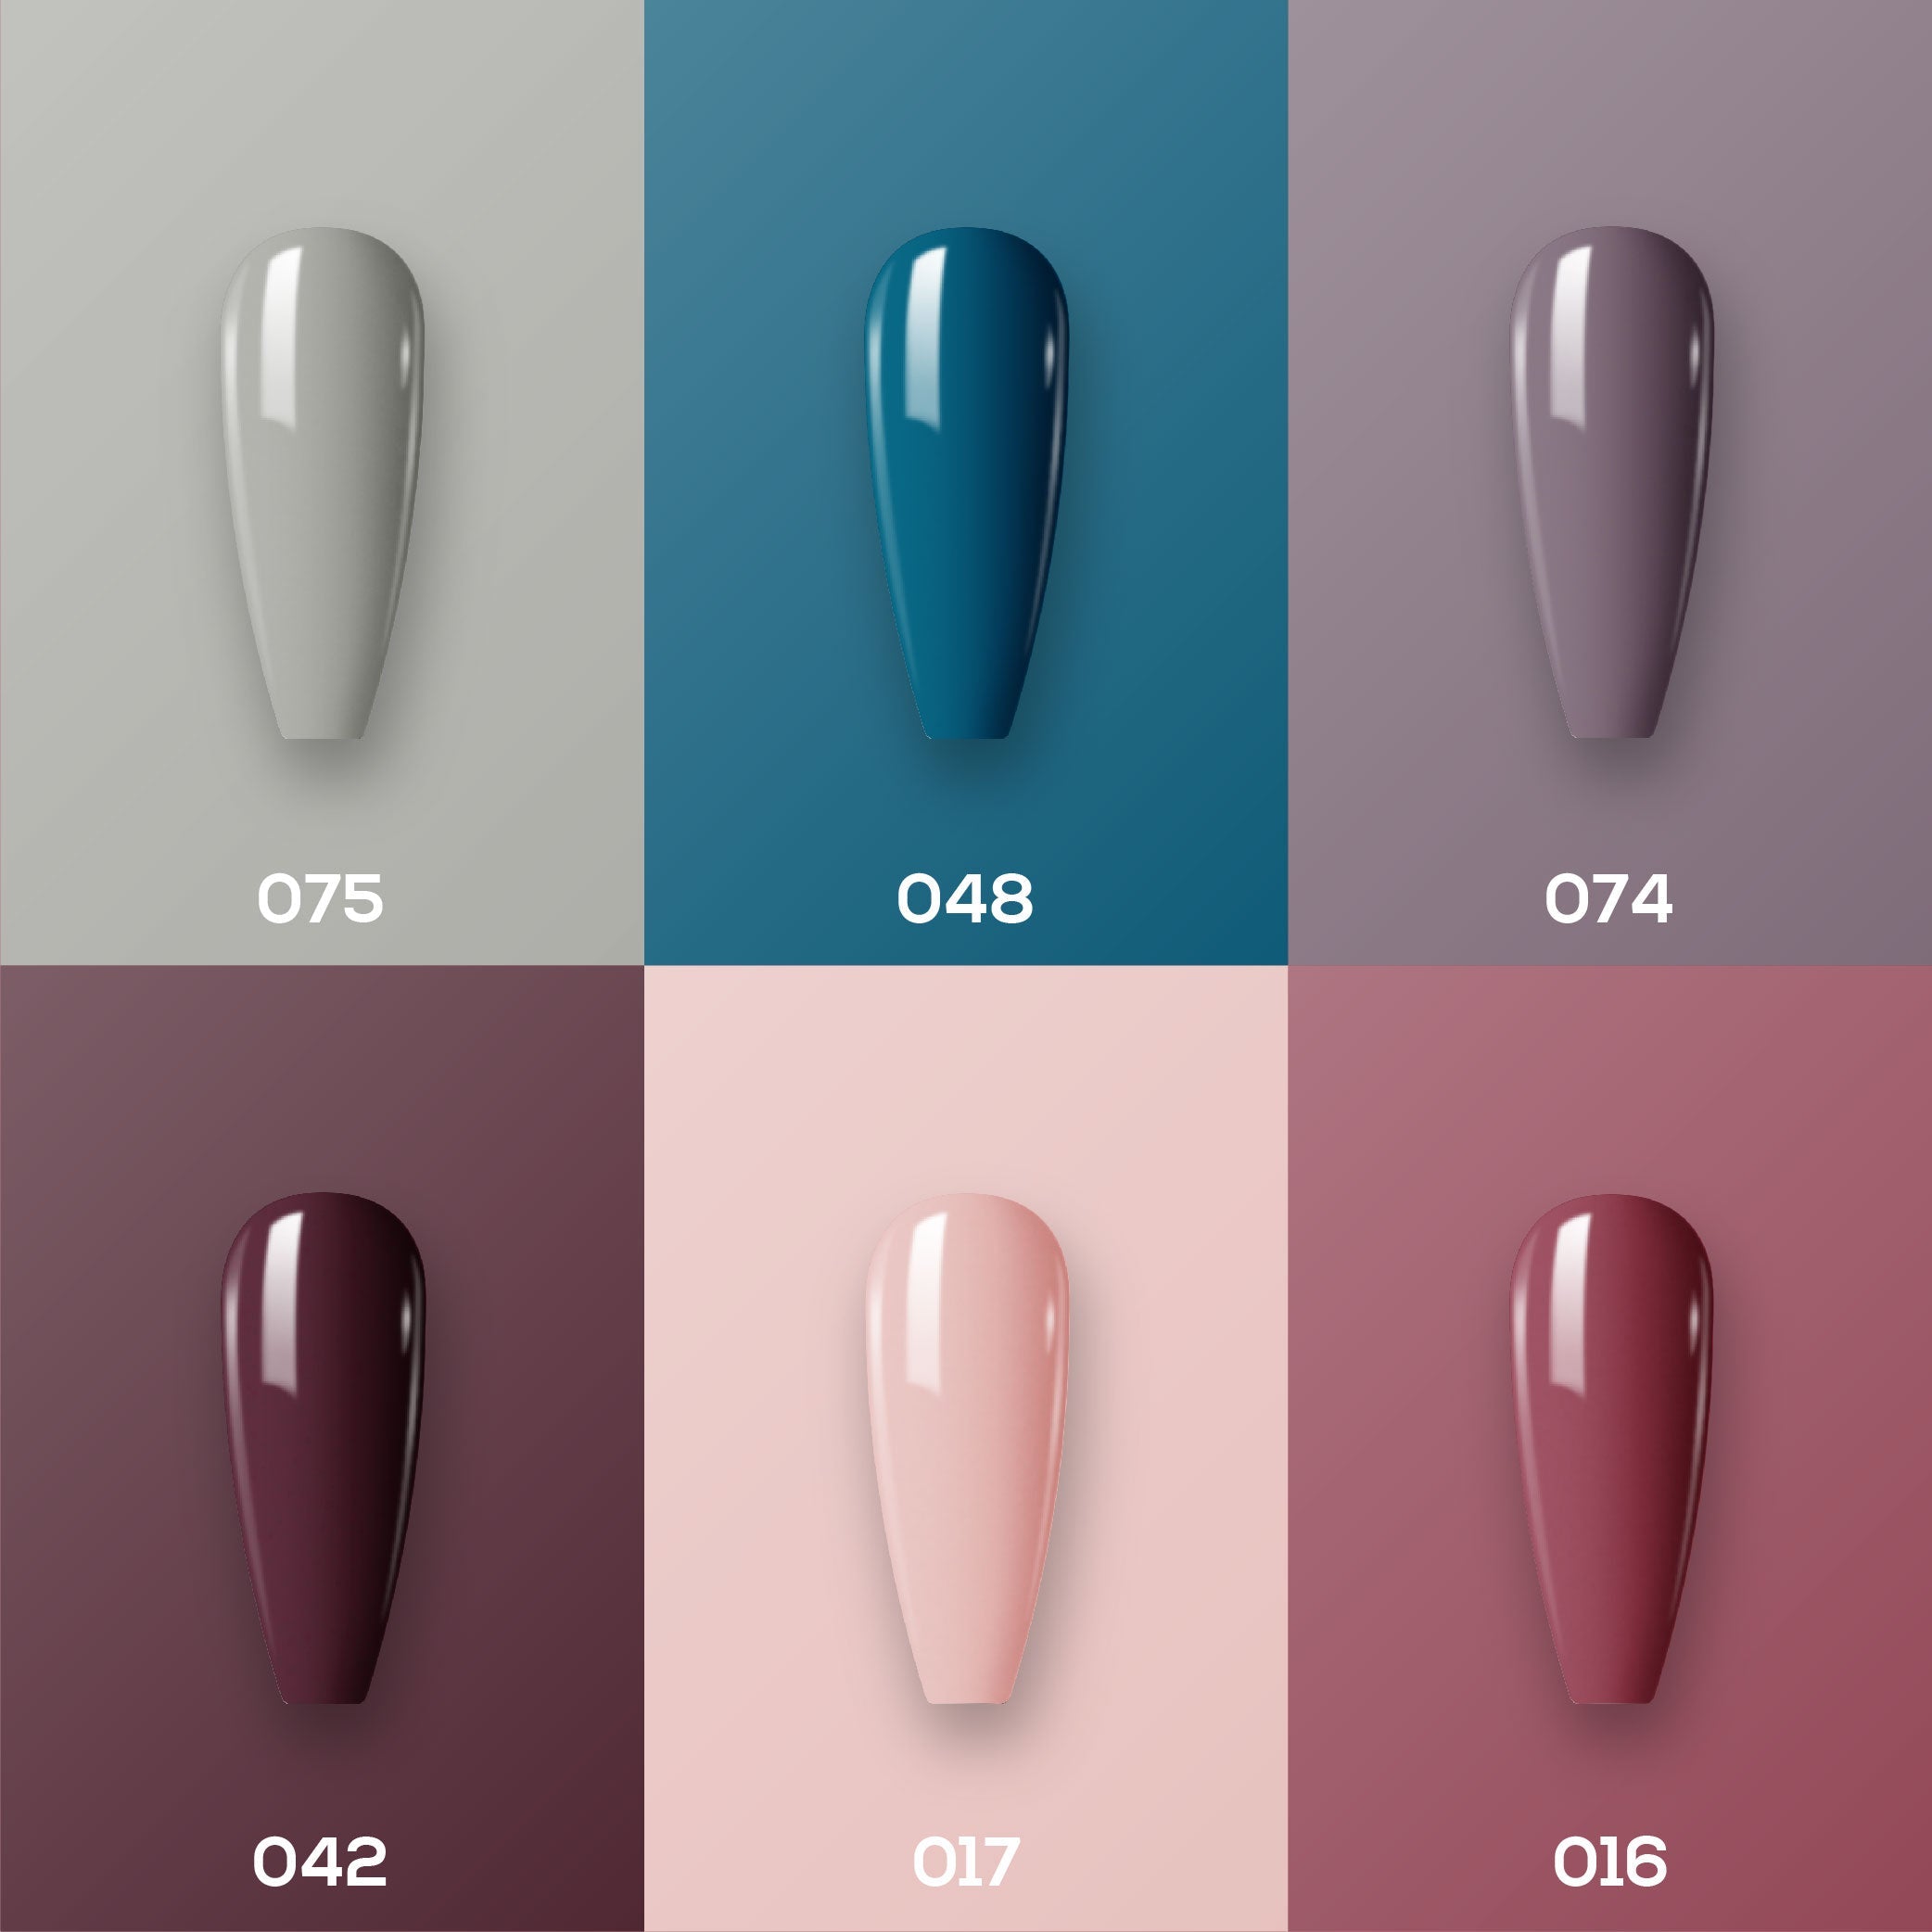 Lavis Gel Color Set G9 (6 colors) : 75, 48, 74, 42, 17, 16